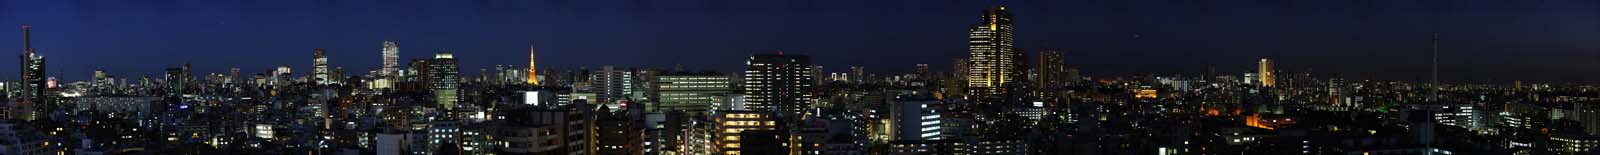 fotografia, material, livra, ajardine, imagine, proveja fotografia,Uma viso noturna de Tquio, viso noturna, construindo, Iluminao, cidade grande